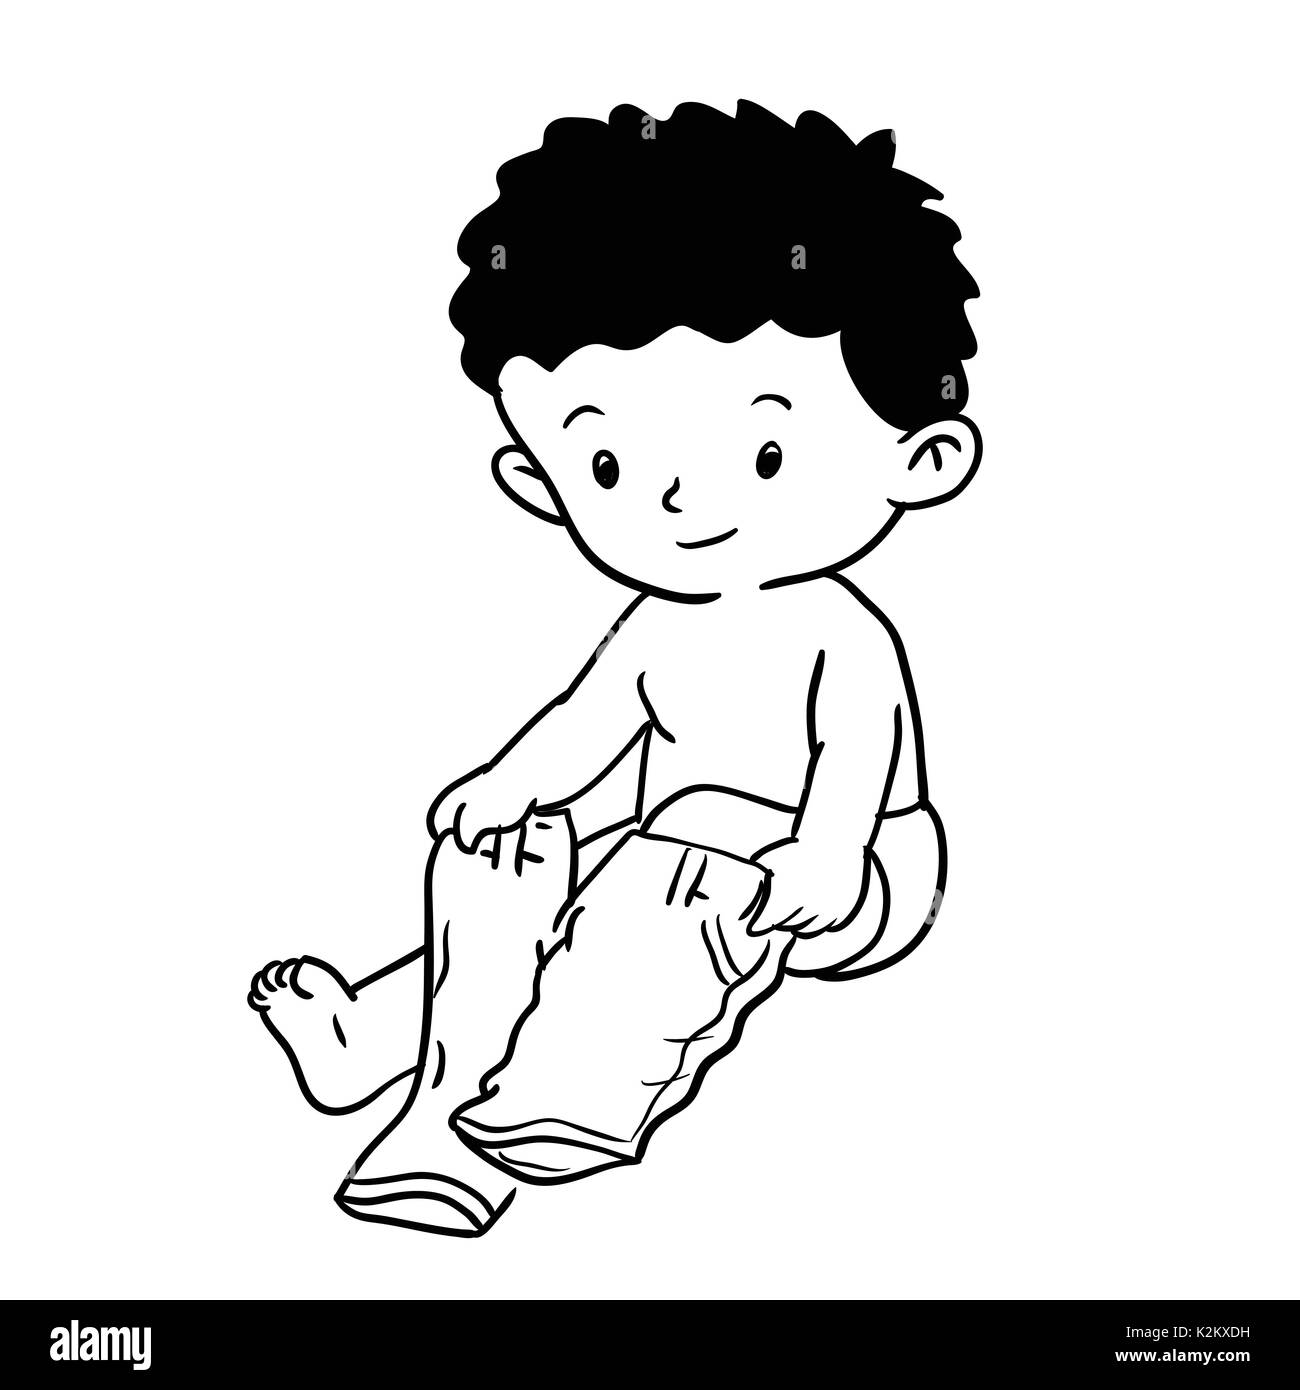 Disegno a mano del ragazzo che indossa pantaloni isolati su sfondo bianco.  Bianco e nero linea semplice illustrazione vettoriale per libro da colorare  - Linea tracciata vettore Immagine e Vettoriale - Alamy